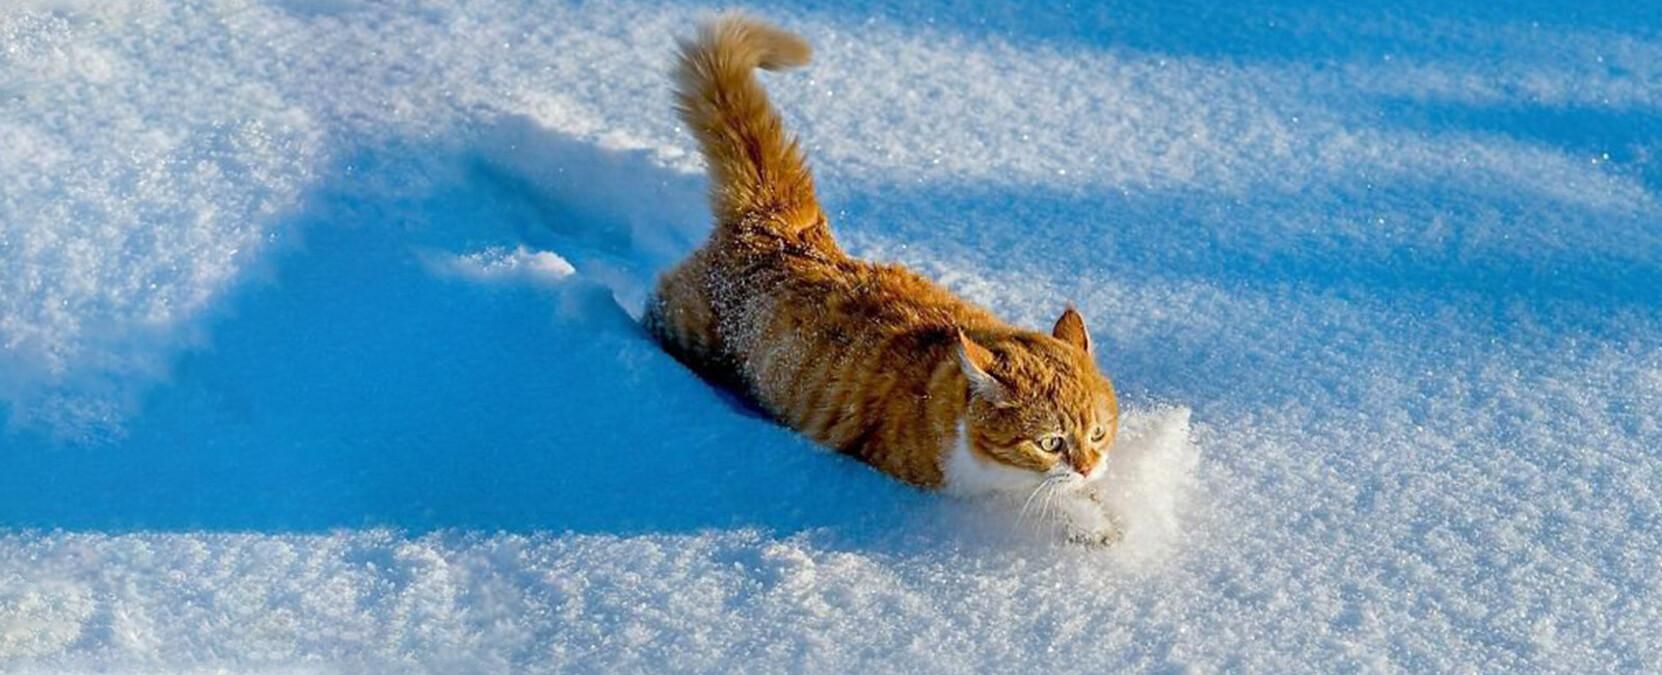 Львов обильно засыпало снегом: машины замело доверху - фото и видео 